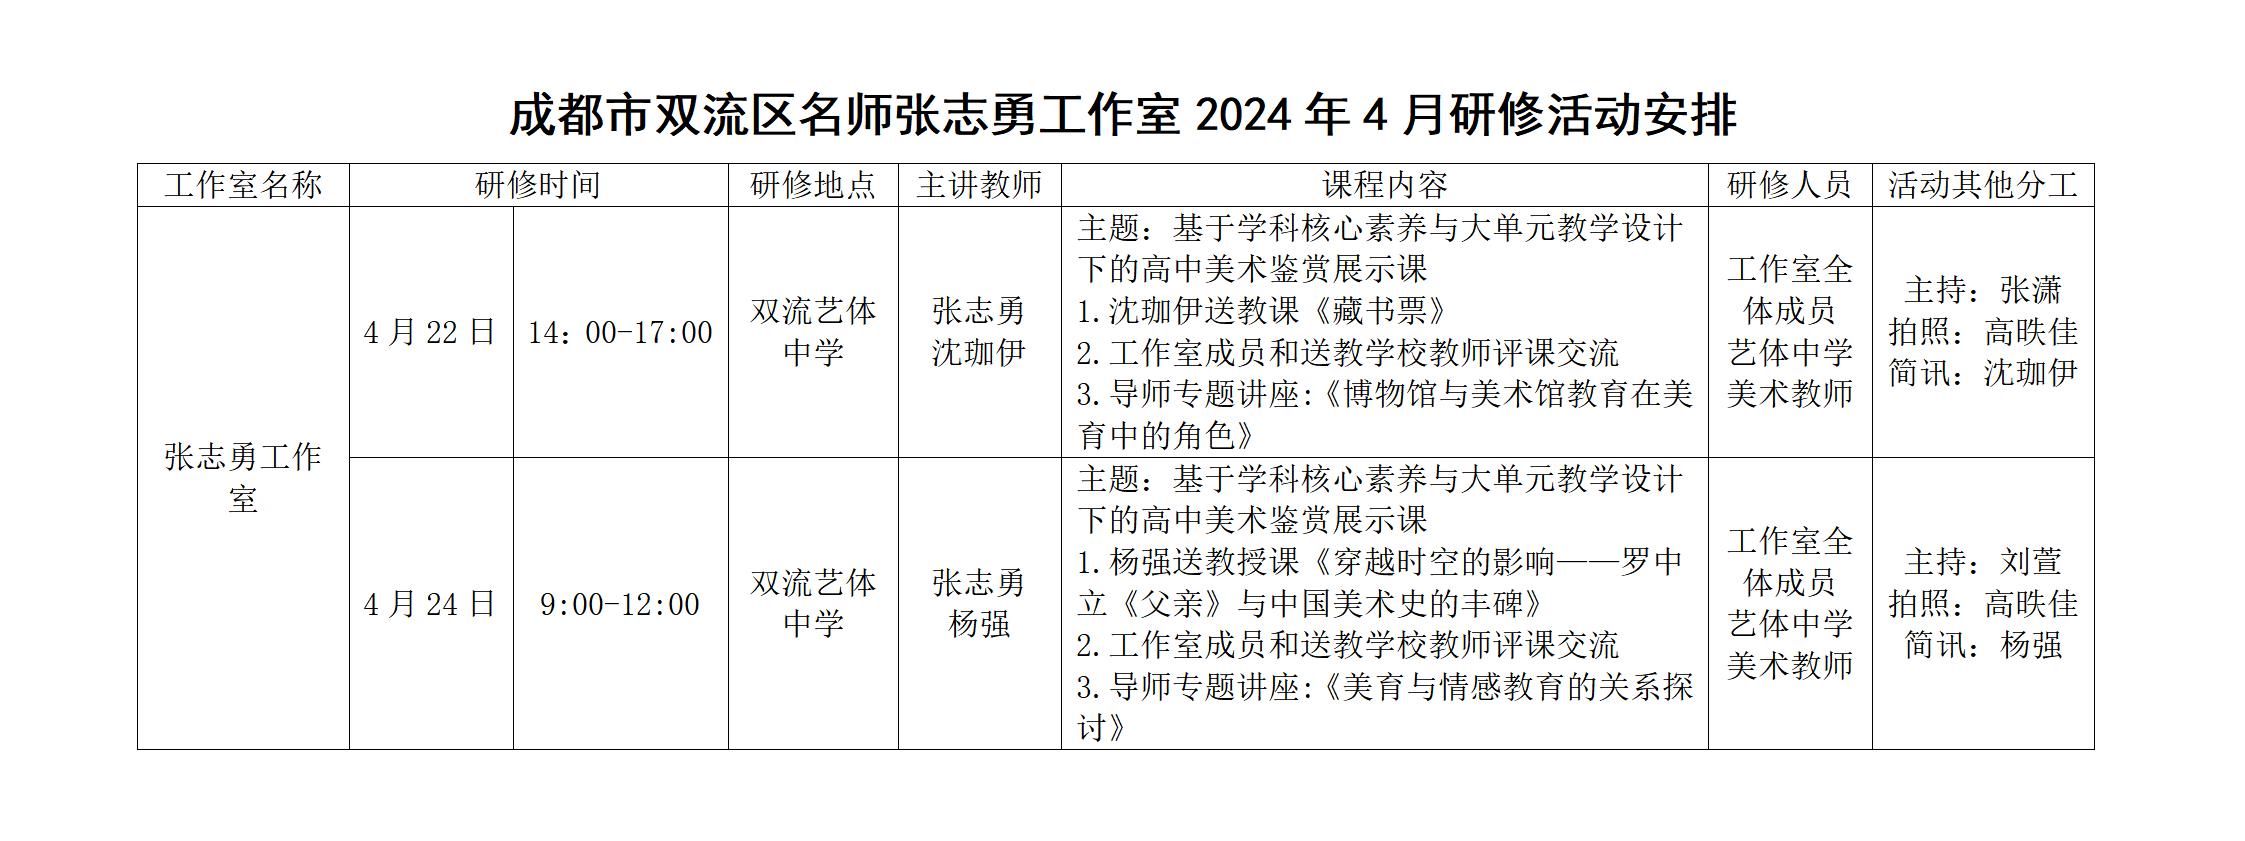 双流区名师张志勇工作室2024年4月研修活动安排_01.jpg